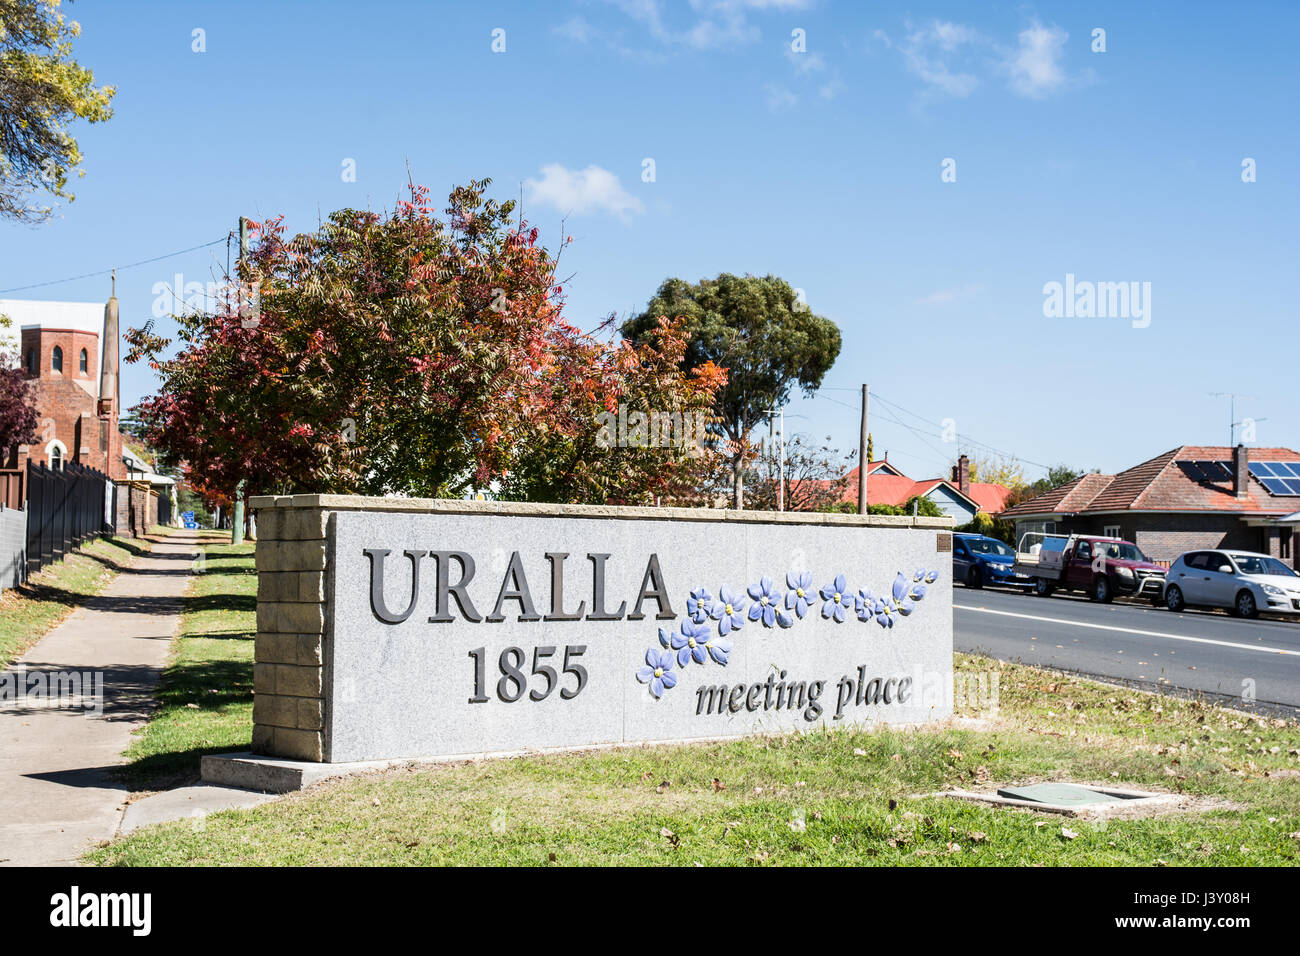 Panneau annonçant la ville de Uralla, NSW Australie. Banque D'Images